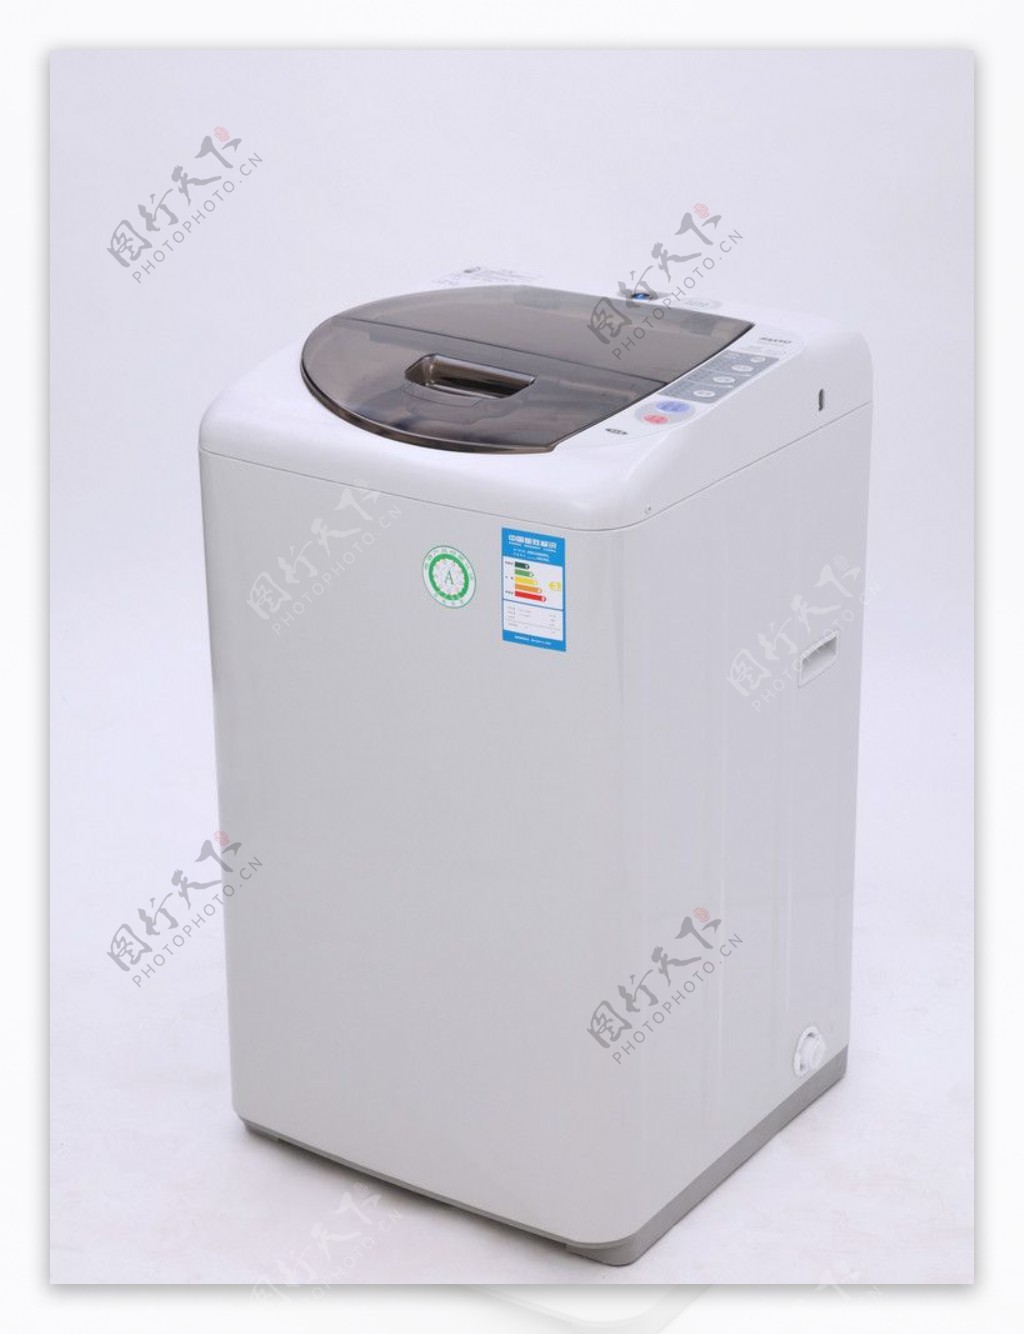 SANYO三洋全自动洗衣机图片